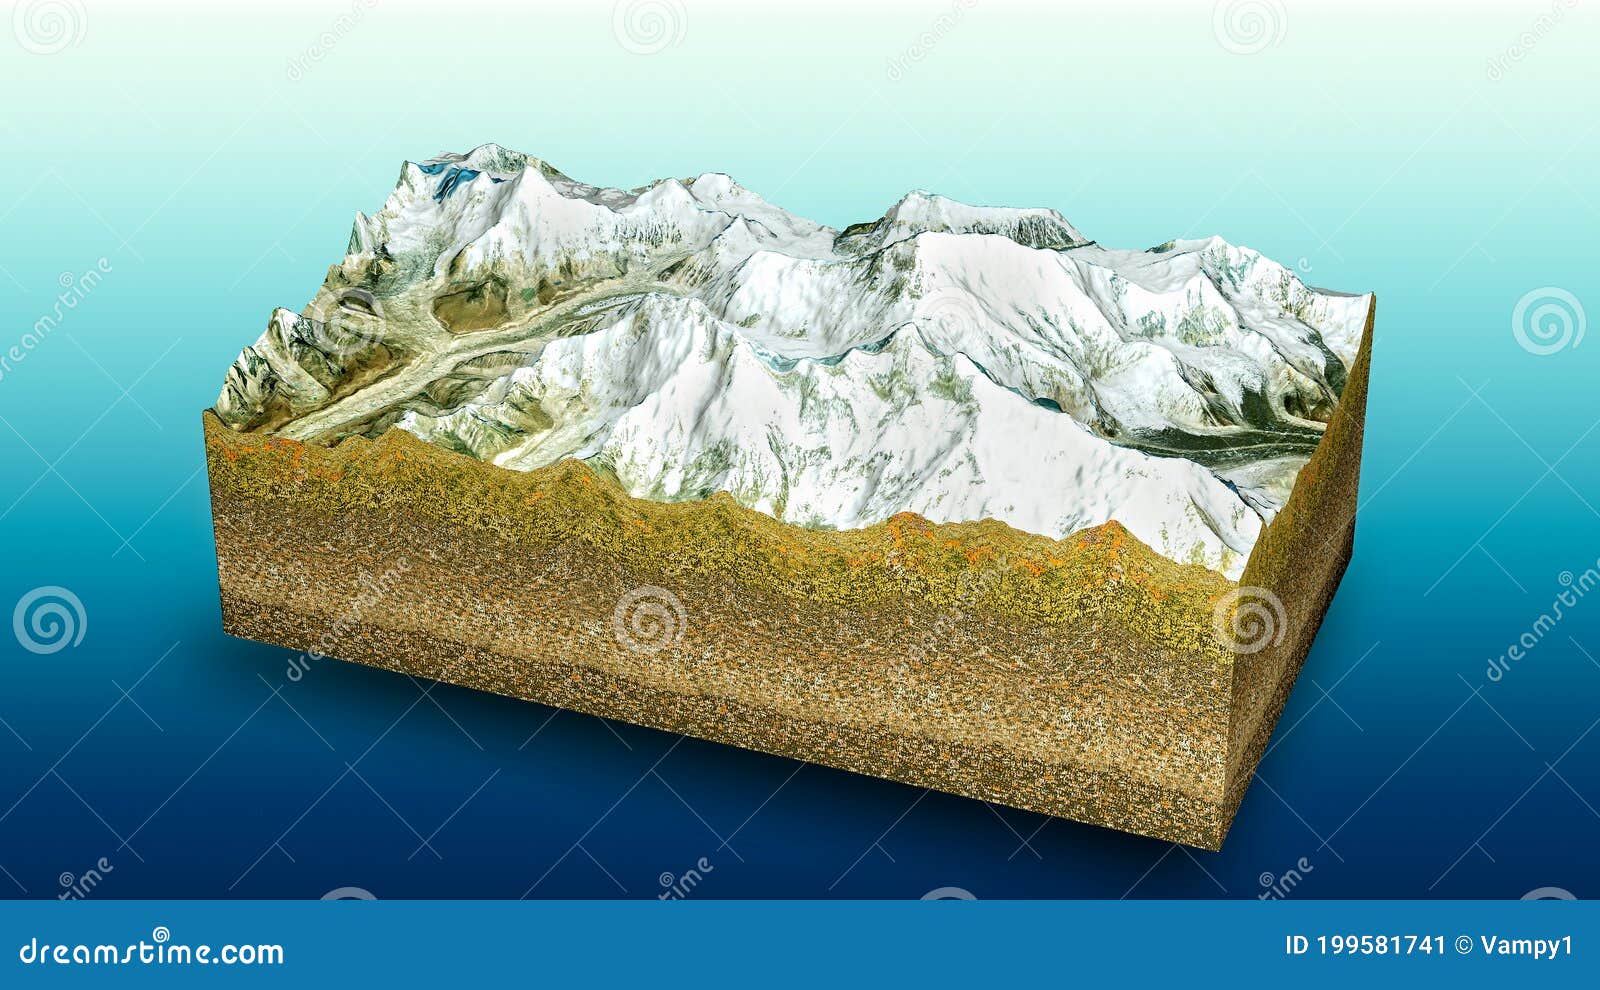 himalayan mountains world map